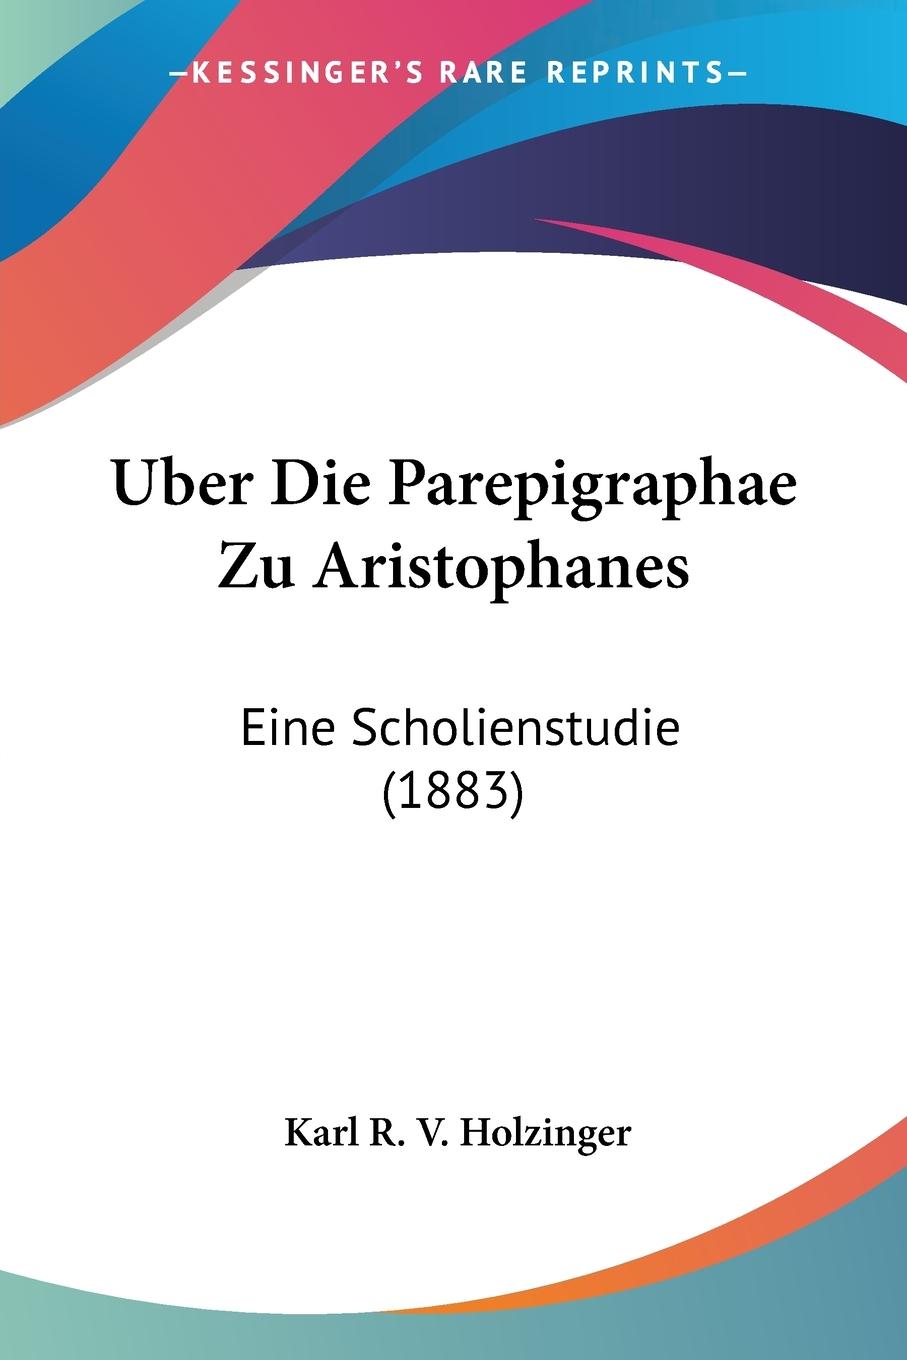 Uber Die Parepigraphae Zu Aristophanes - Holzinger, Karl R. V.